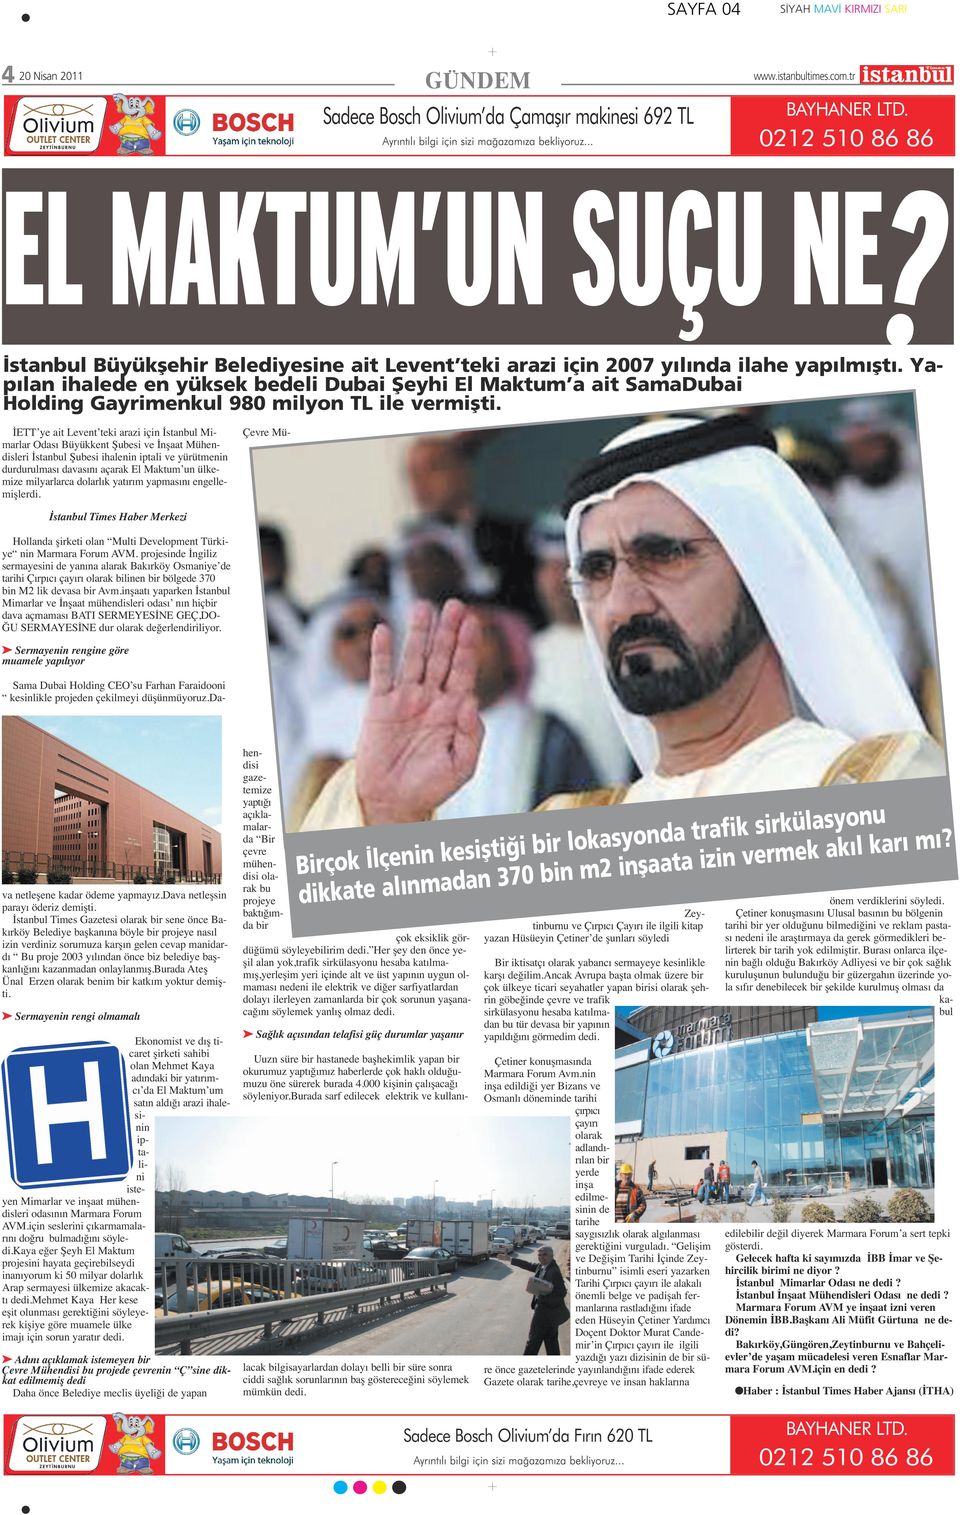 Yap lan ihalede en yüksek bedeli Dubai fieyhi El Maktum a ait SamaDubai Holding Gayrimenkul 980 milyon TL ile vermiflti.